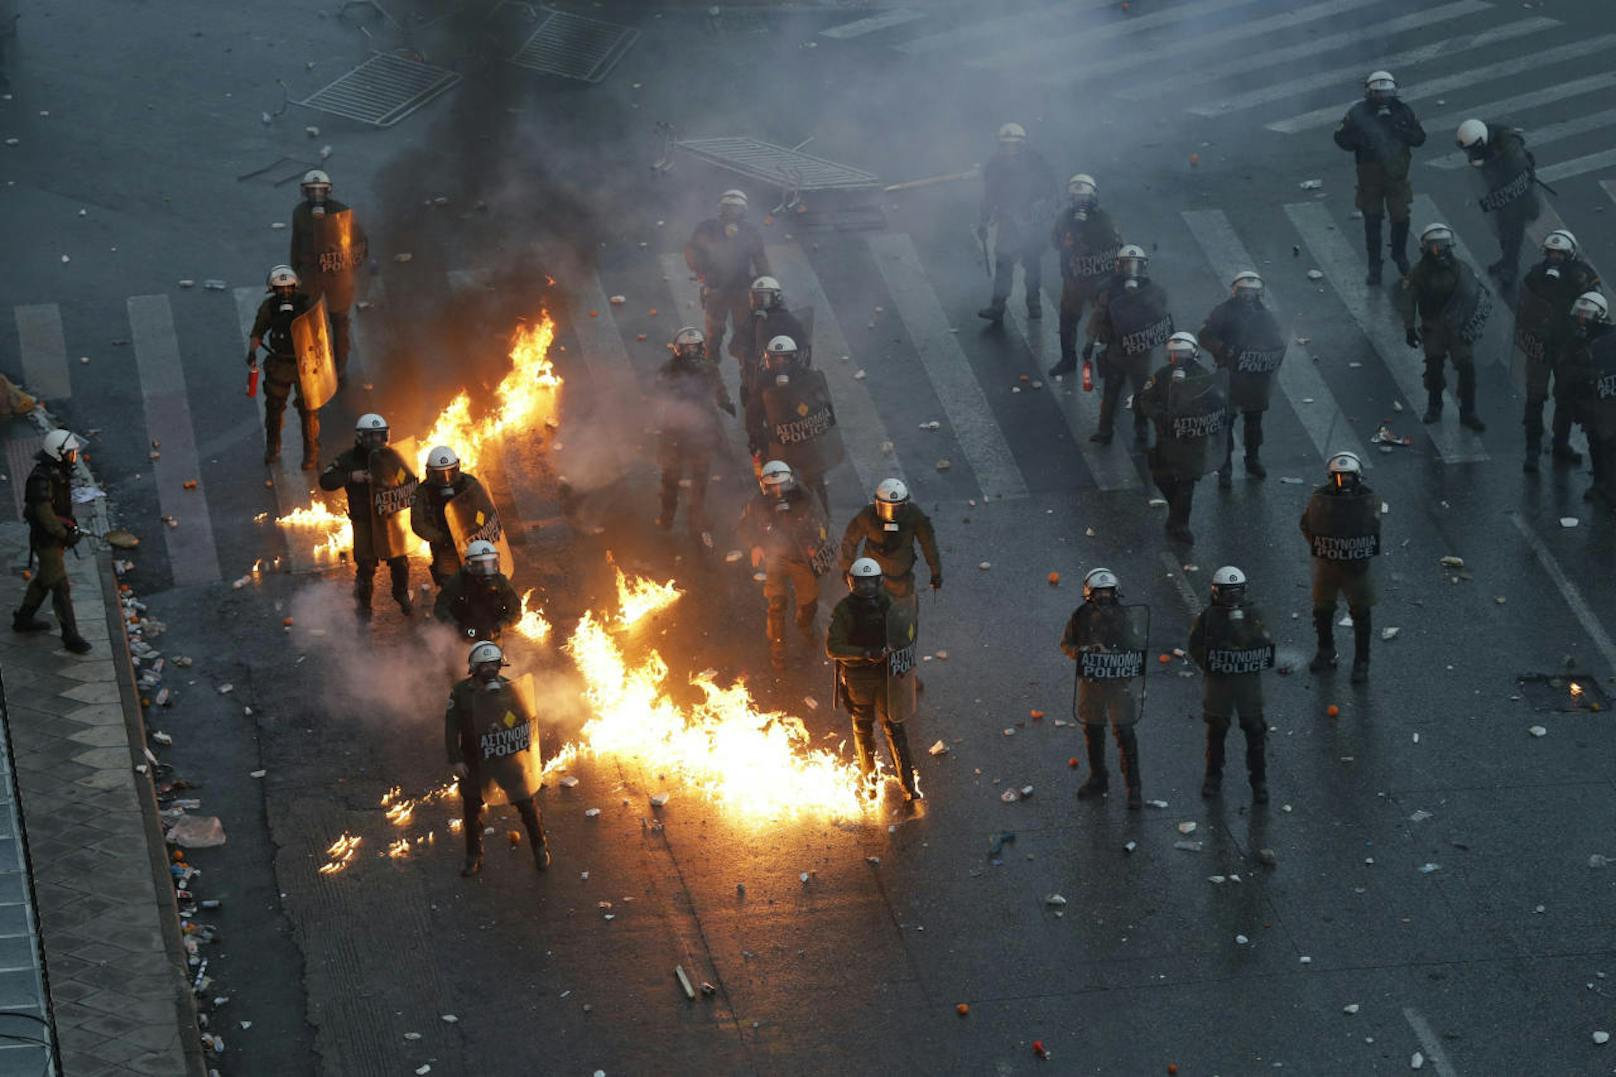 Bei einer Großkundgebung von nationalistischen Demonstranten in Griechenland kam es zu heftigen Straßenschlachten. Die Demonstranten protestieren gegen die geplante Beilegung des Namensstreits zwischen Griechenland und der ehemaligen jugoslawischen Teilrepublik Mazedonien.